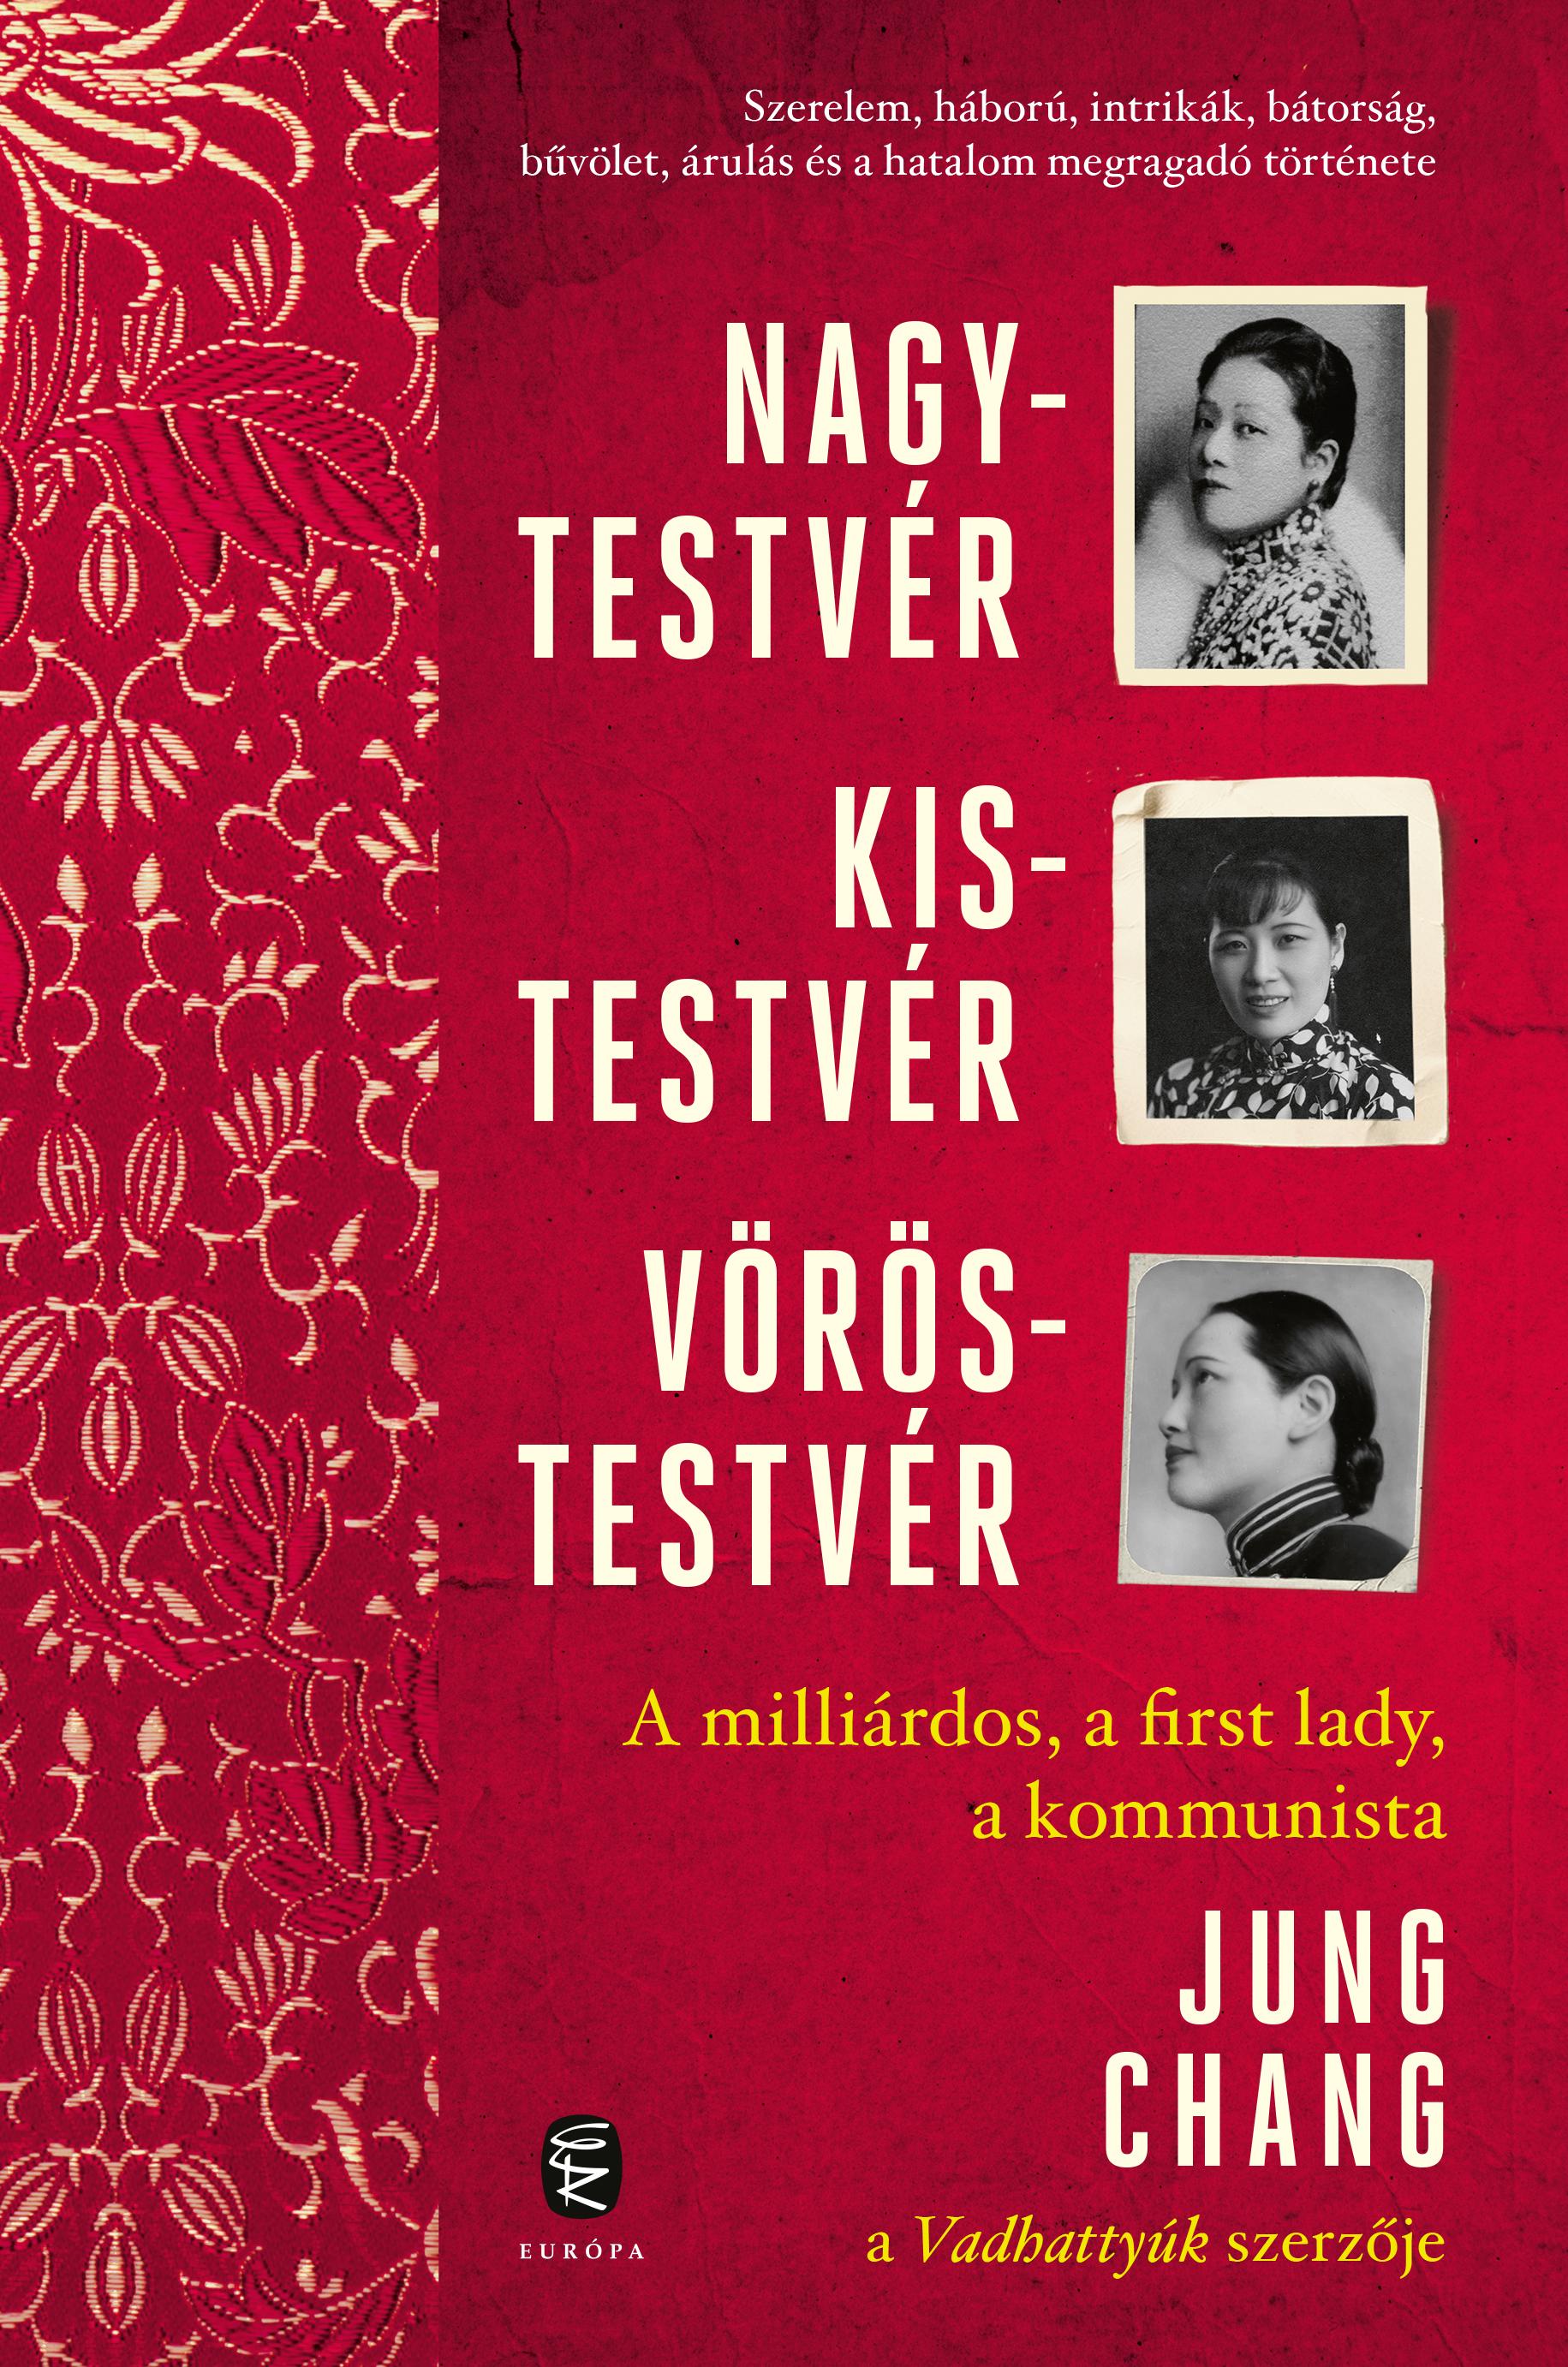 Chang, Jung - Nagytestvér, kistestvér, vöröstestvér - A milliárdos, a first lady, a kommunista